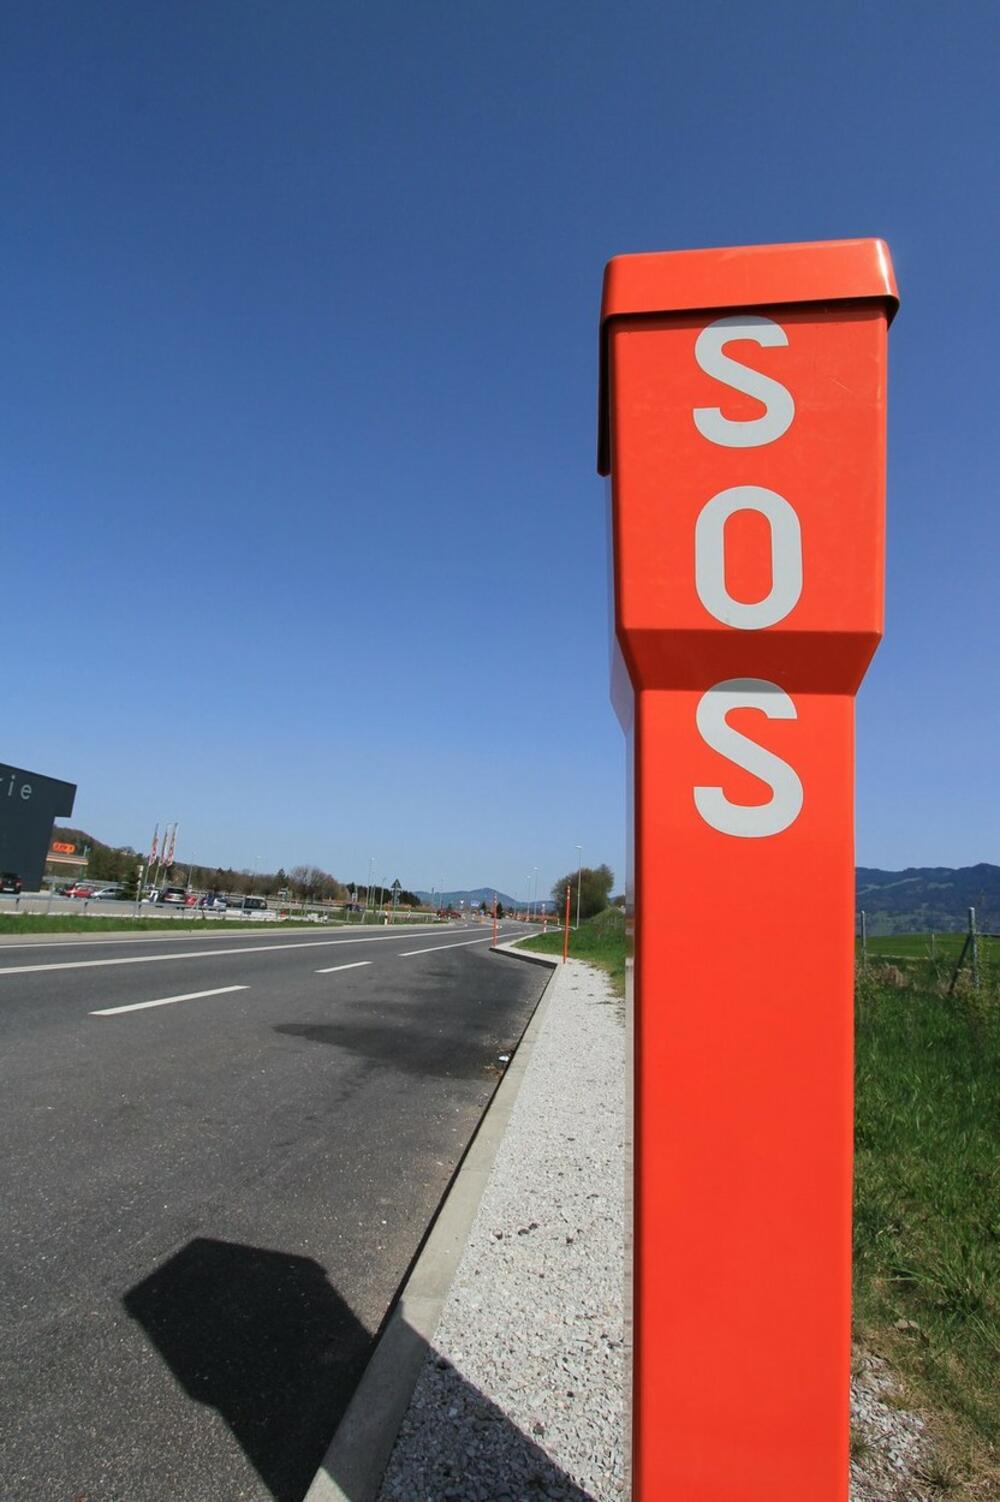 SOS, S.O.S., signal, pomoć, šta znači